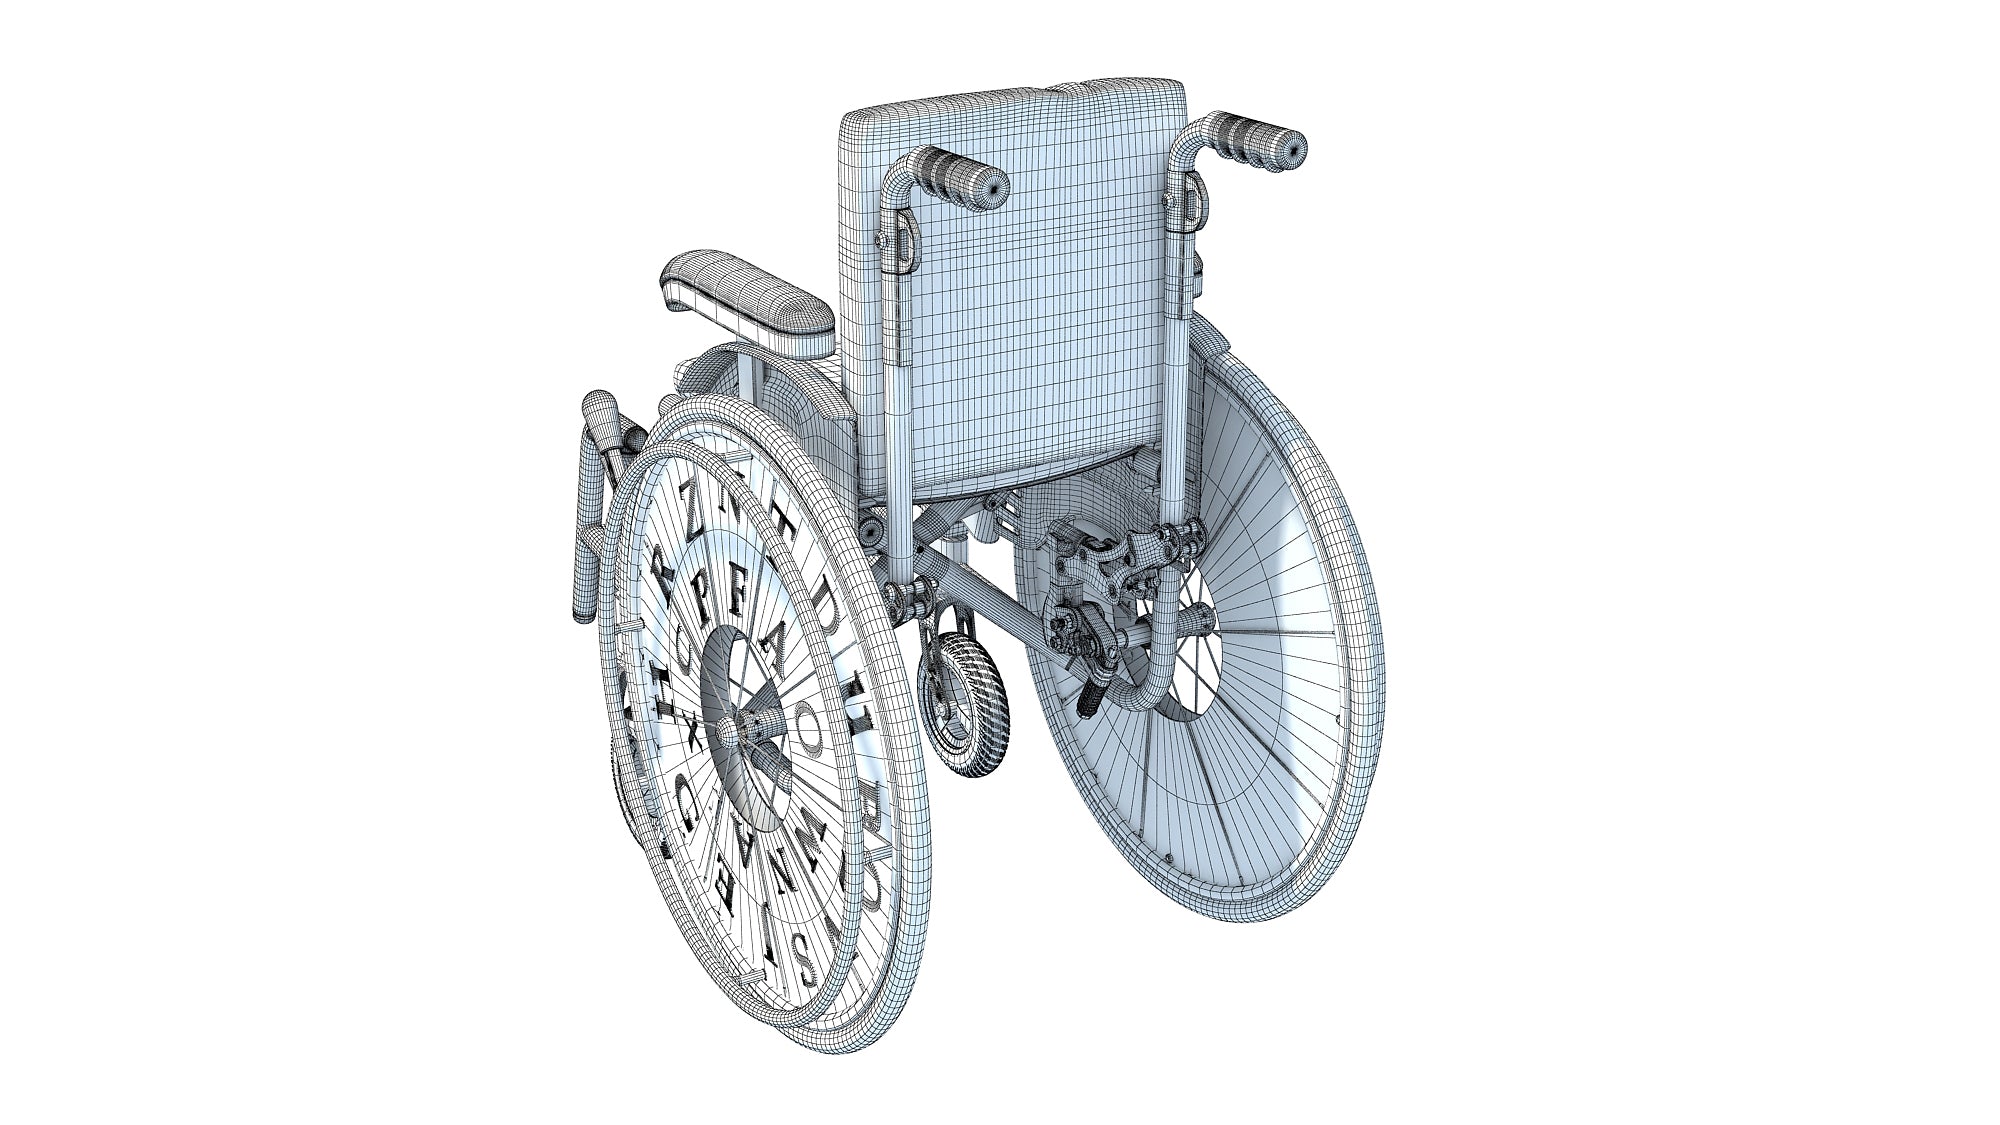 Wheelchair Wheel Chair for Kids